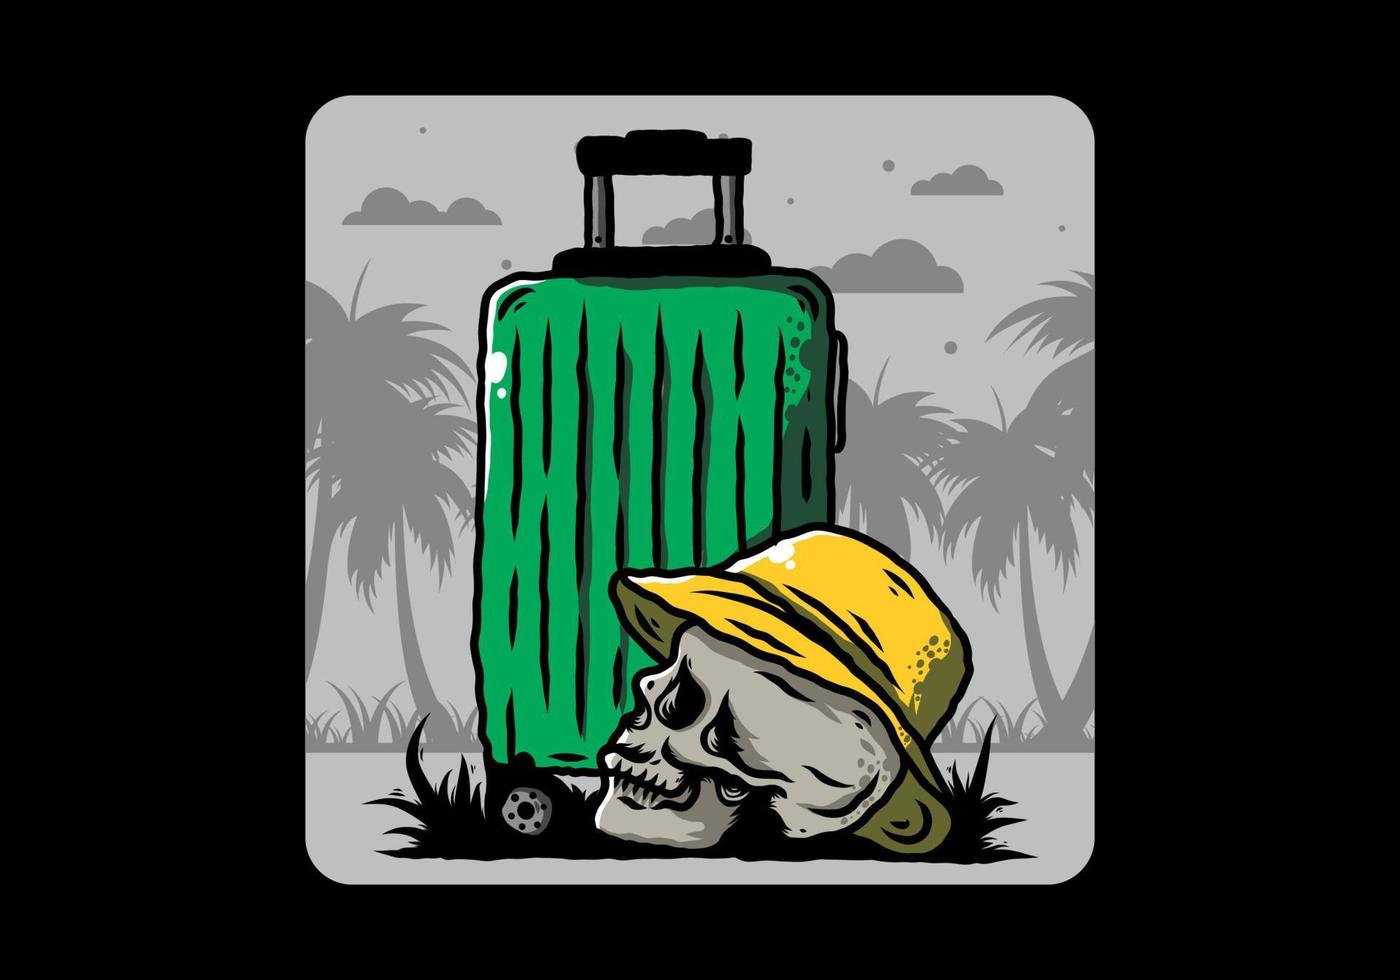 tête de mort portant un chapeau sous une illustration de valise de voyage vecteur